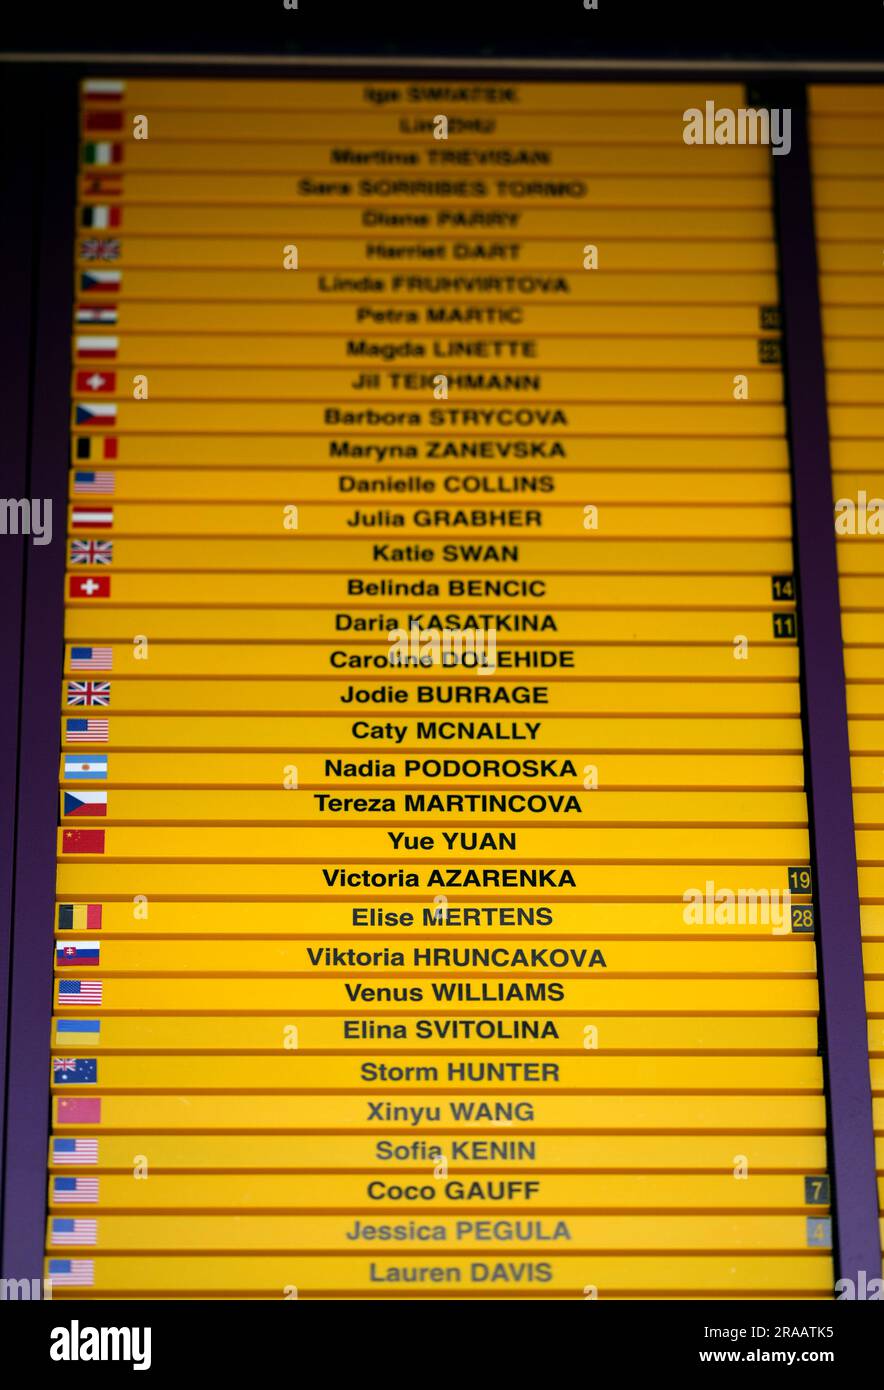 I nomi dei giocatori russi e bielorussi Daria Kasatkina e Victoria Azarenka sono mostrati nell'ordine di gioco senza la loro bandiera nazionale, nella foto all'All England Lawn Tennis and Croquet Club di Wimbledon, in vista dei campionati che iniziano lunedì. Data foto: Domenica 2 luglio 2023. Foto Stock